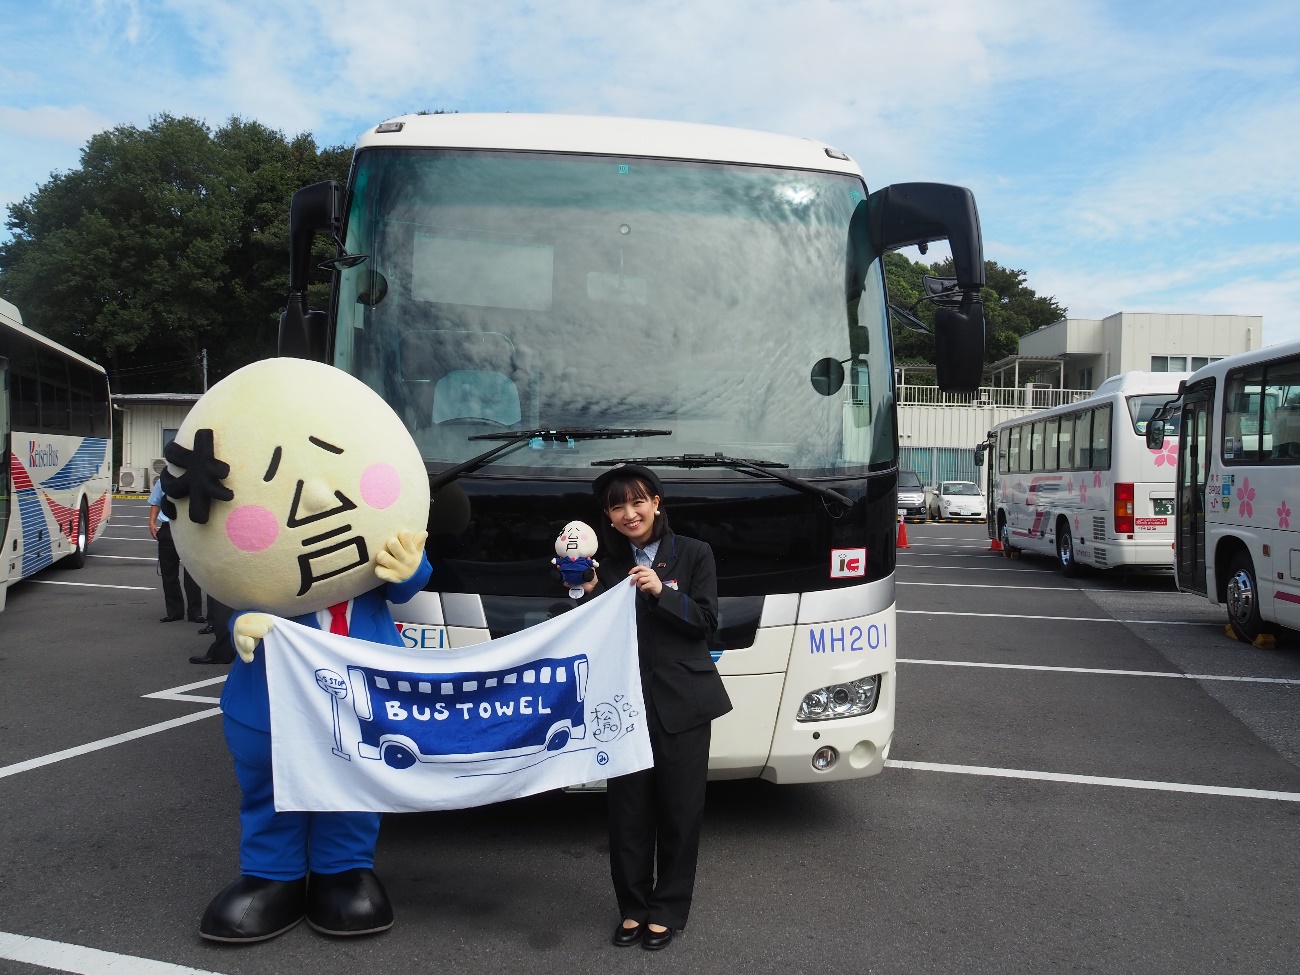 【松戸新京成バス】高速バス 松戸羽田線 「星野みちる」さんによる特別な車内放送の実施